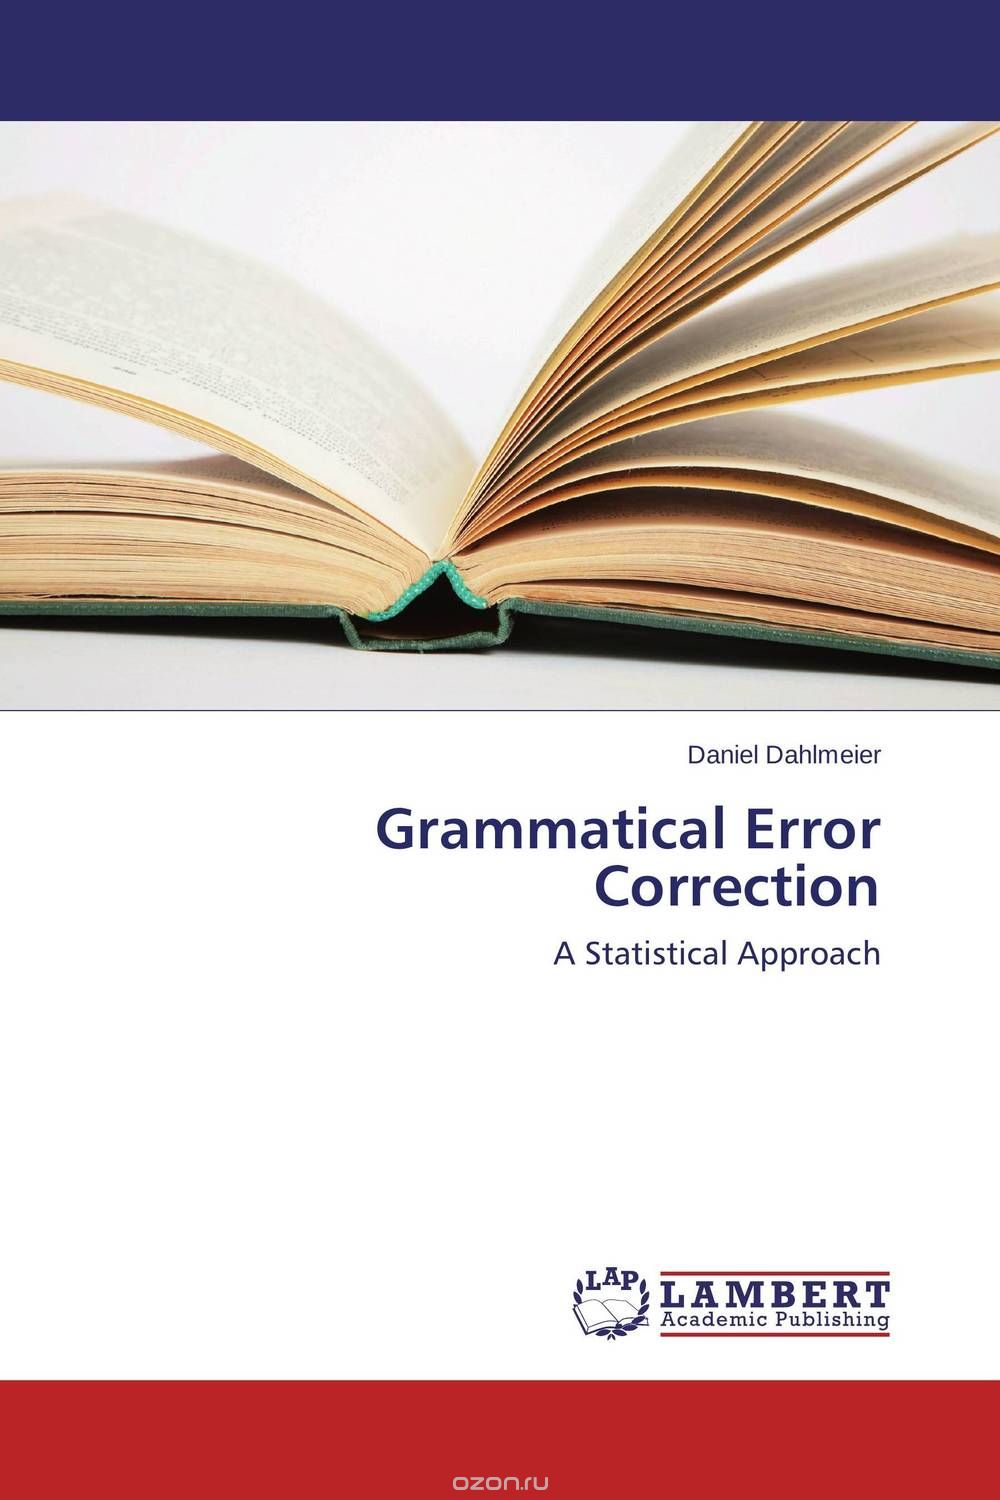 Скачать книгу "Grammatical Error Correction"